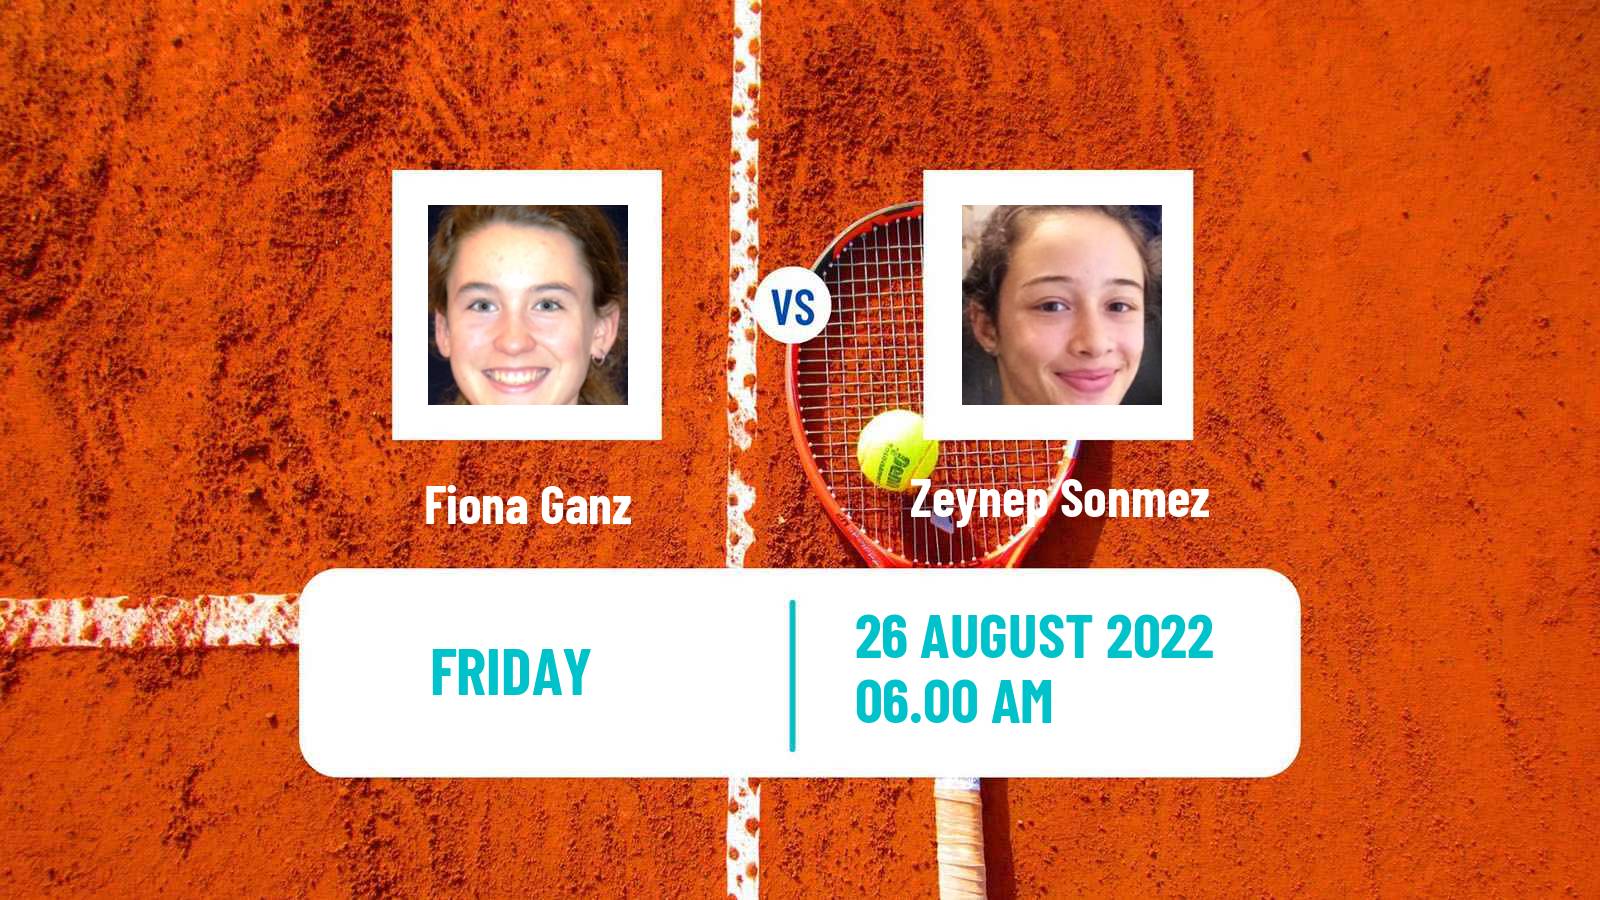 Tennis ITF Tournaments Fiona Ganz - Zeynep Sonmez